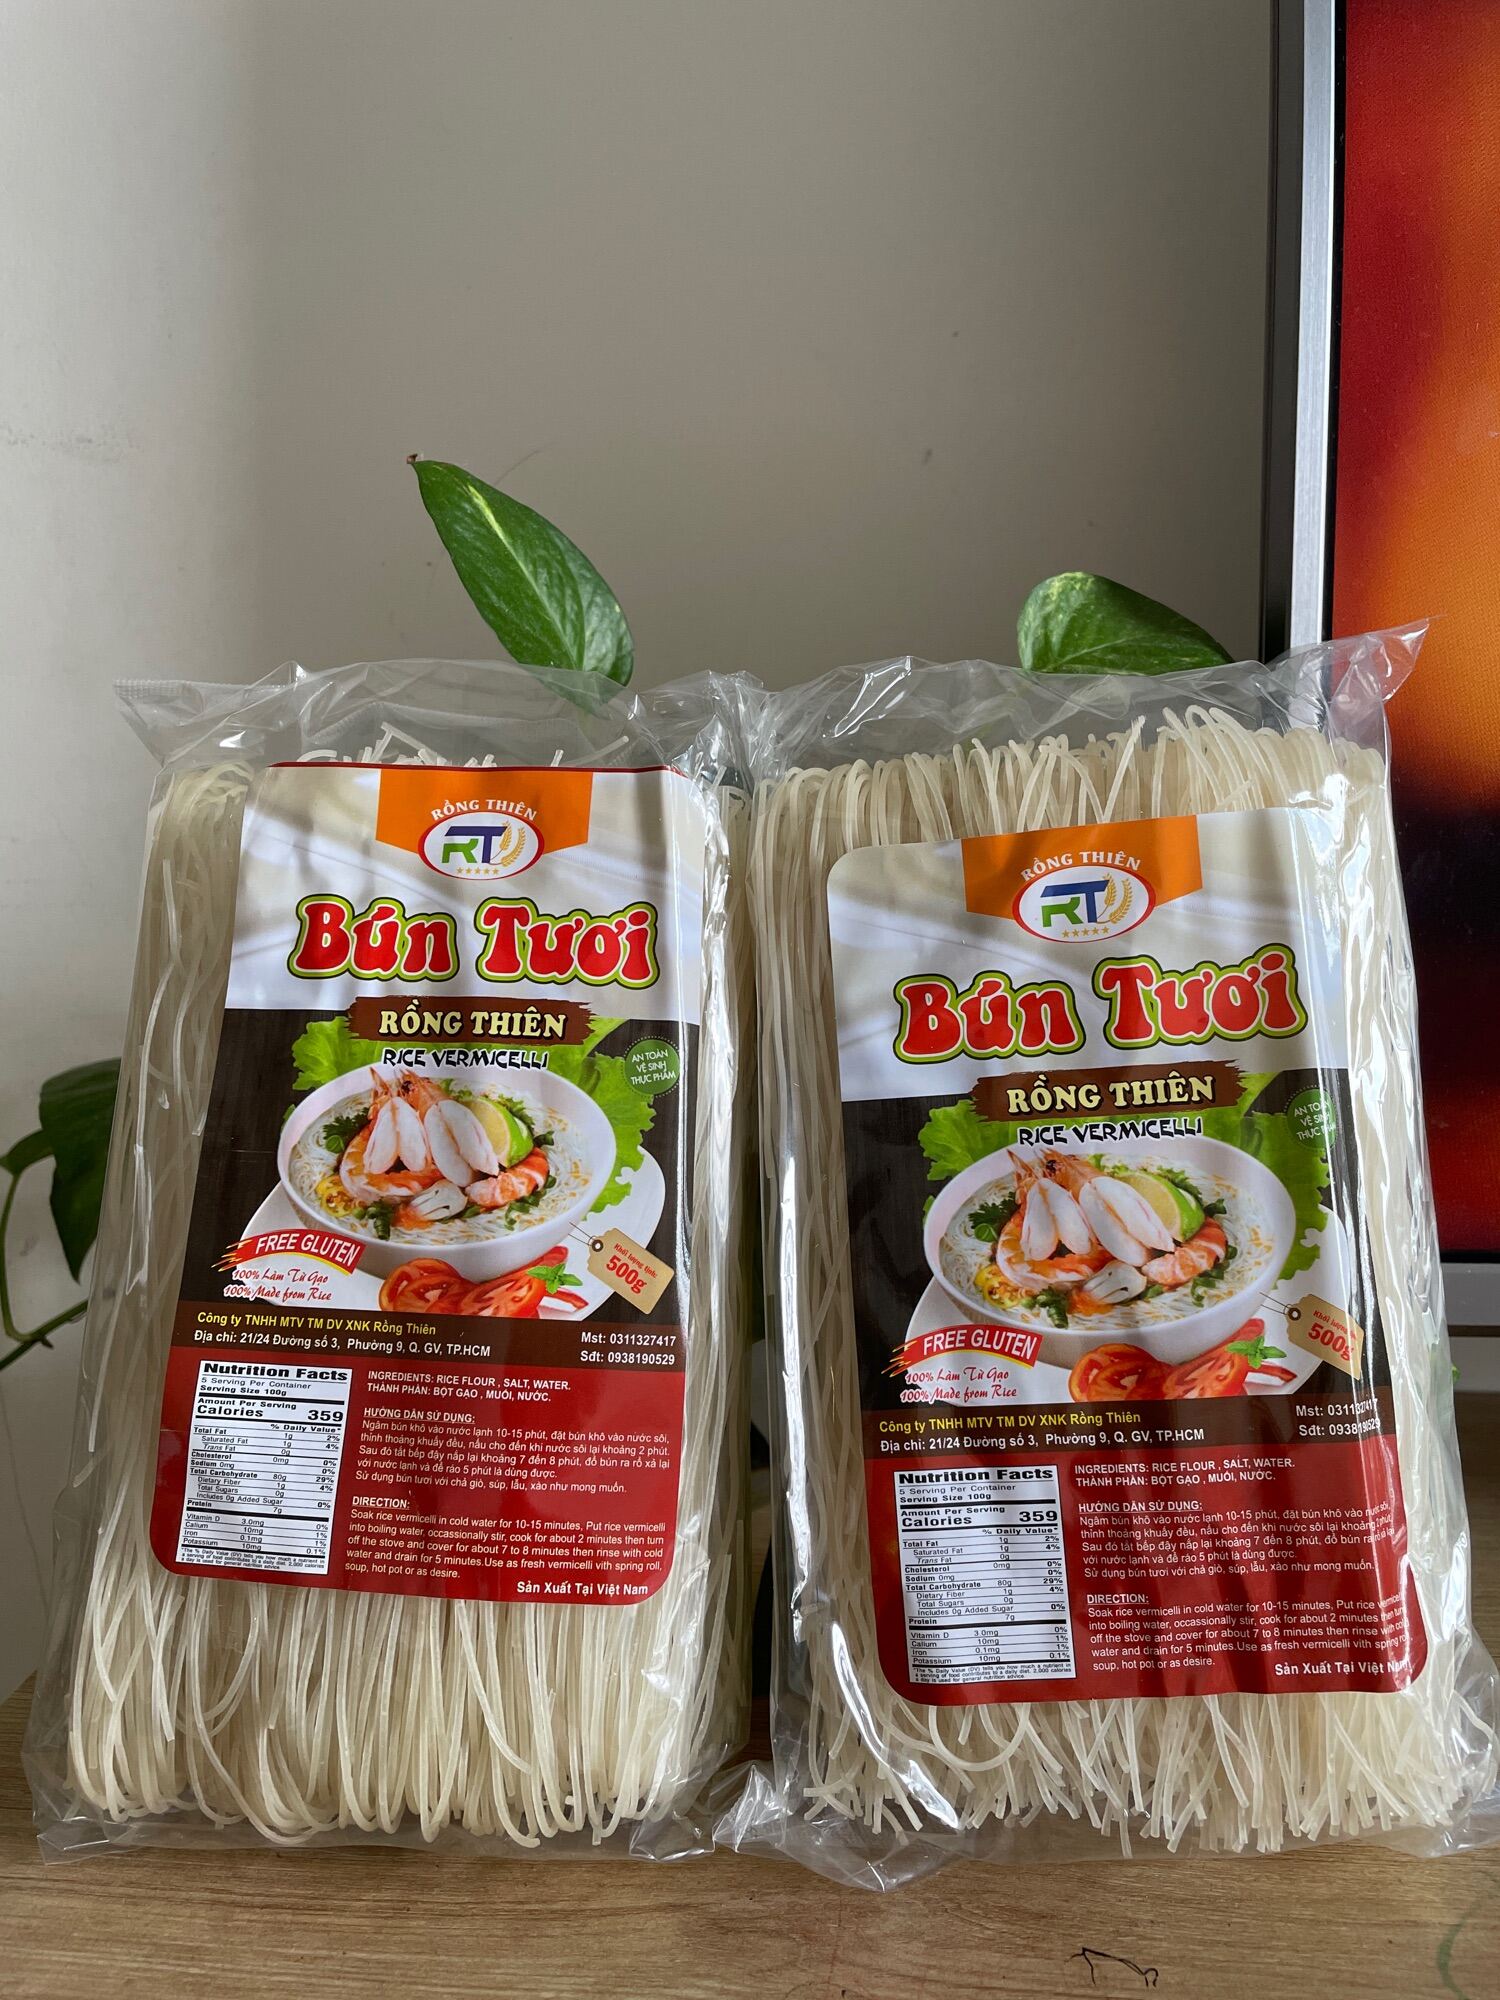 fideos-de-arroz-rong-thien-estilo-bun-500g-2